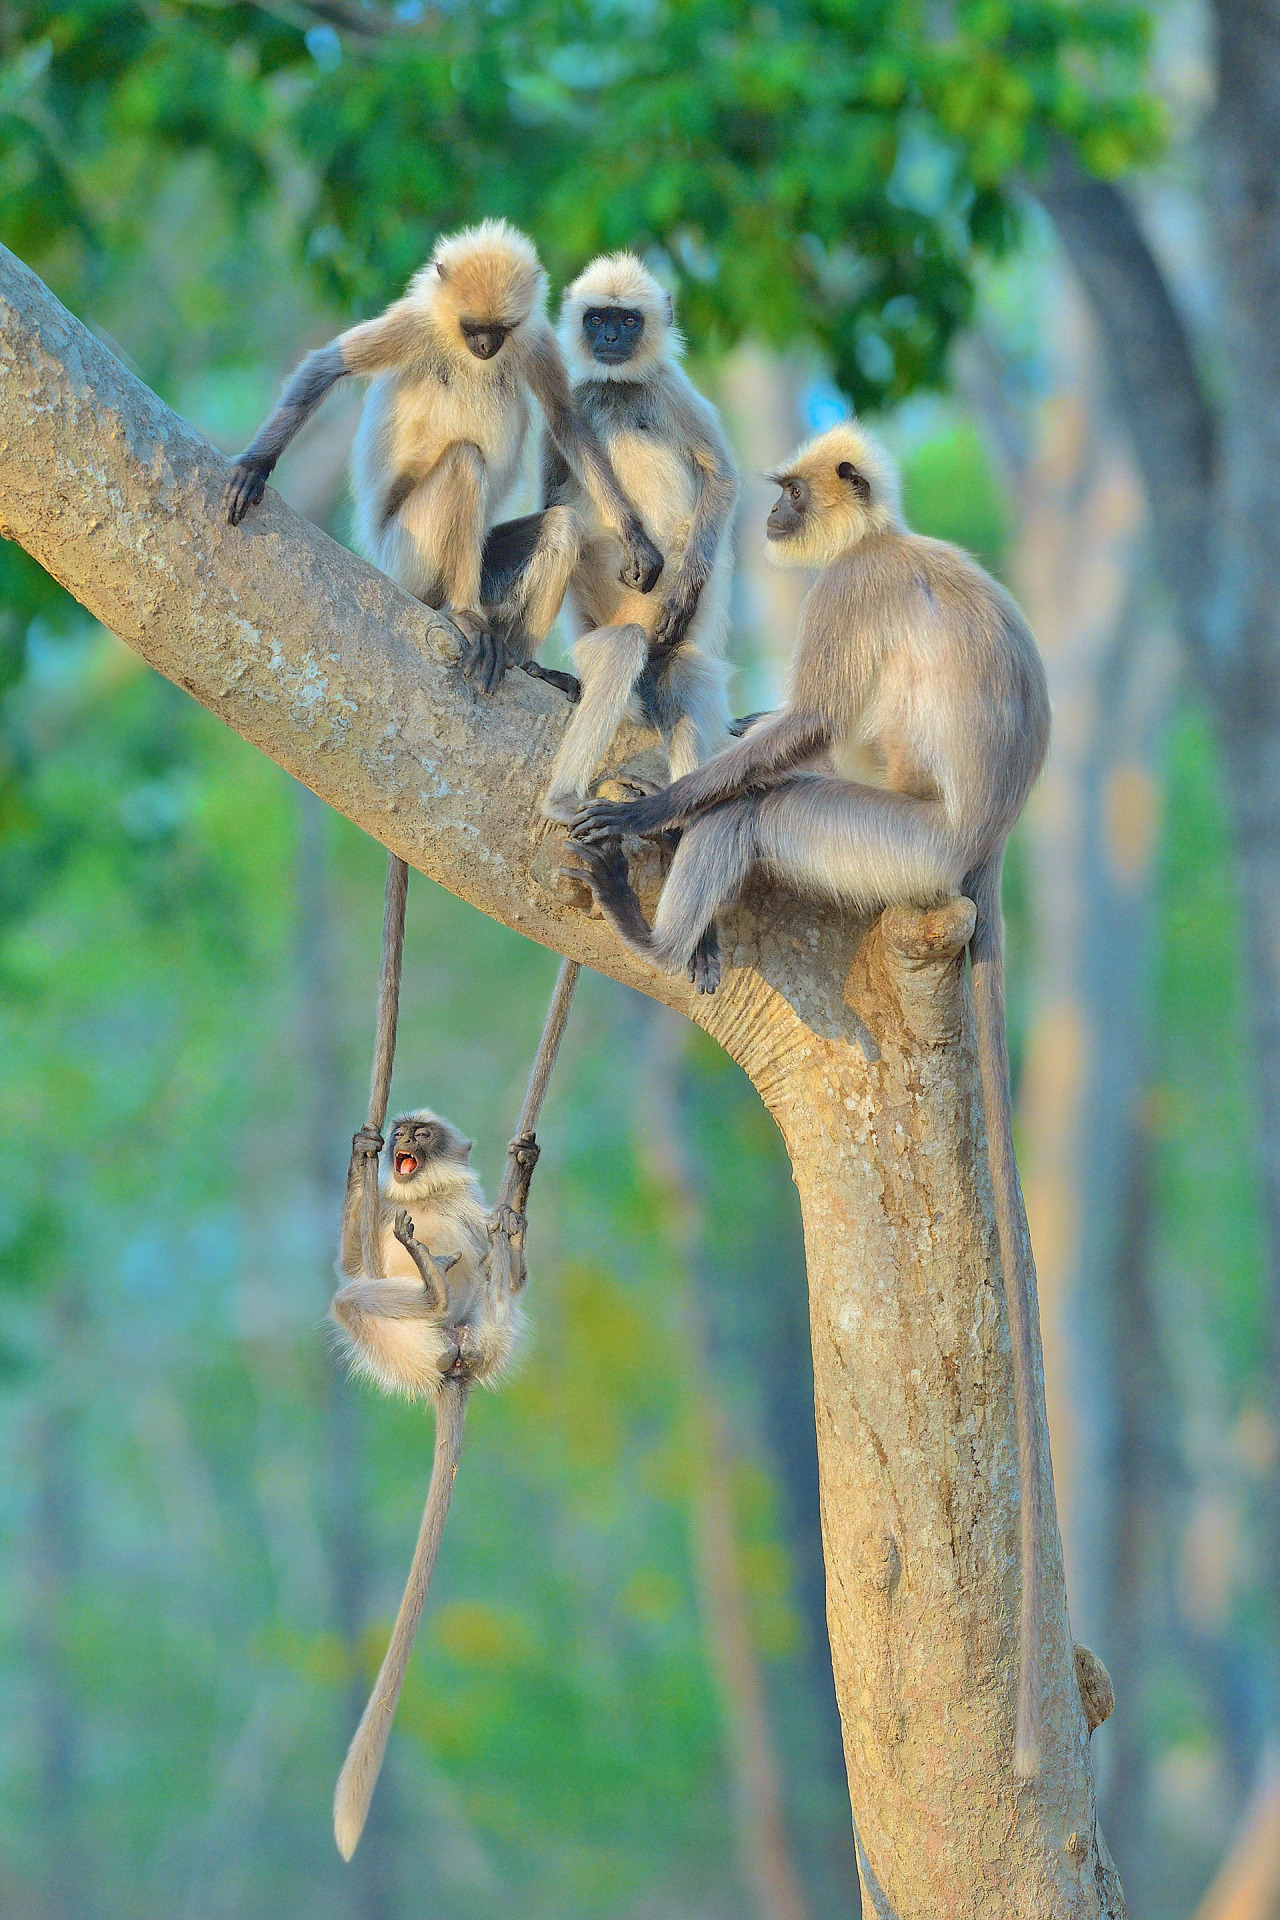 A szürke héjak egy fában lengettek, fénykép: Karnataka, India